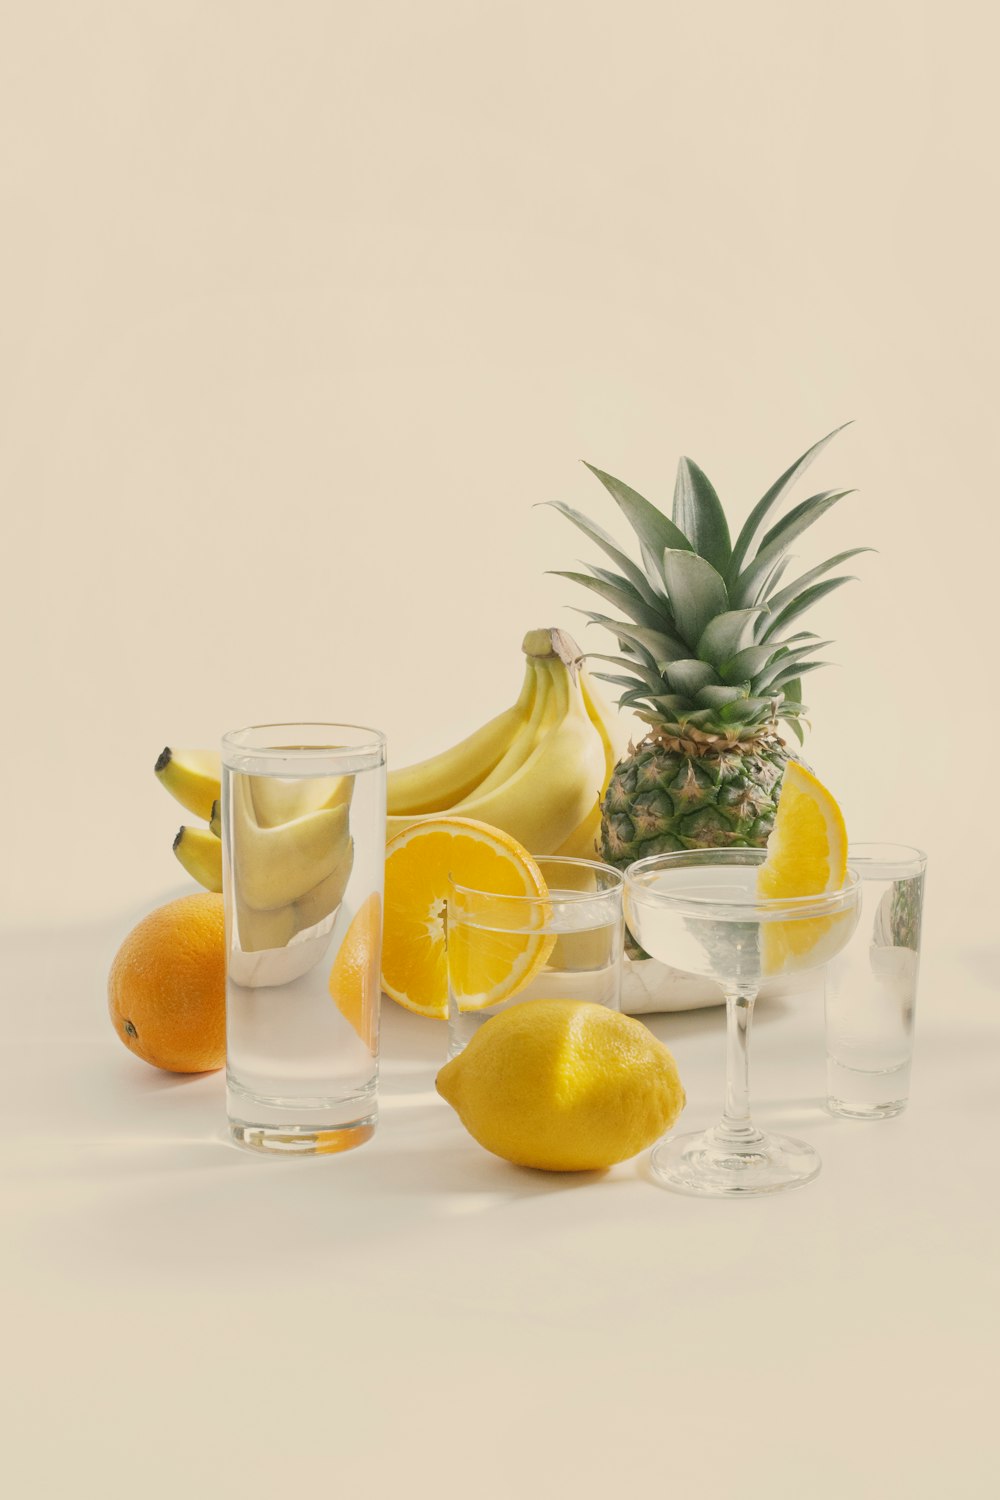 rodajas de limón y vaso transparente con rodajas de limón